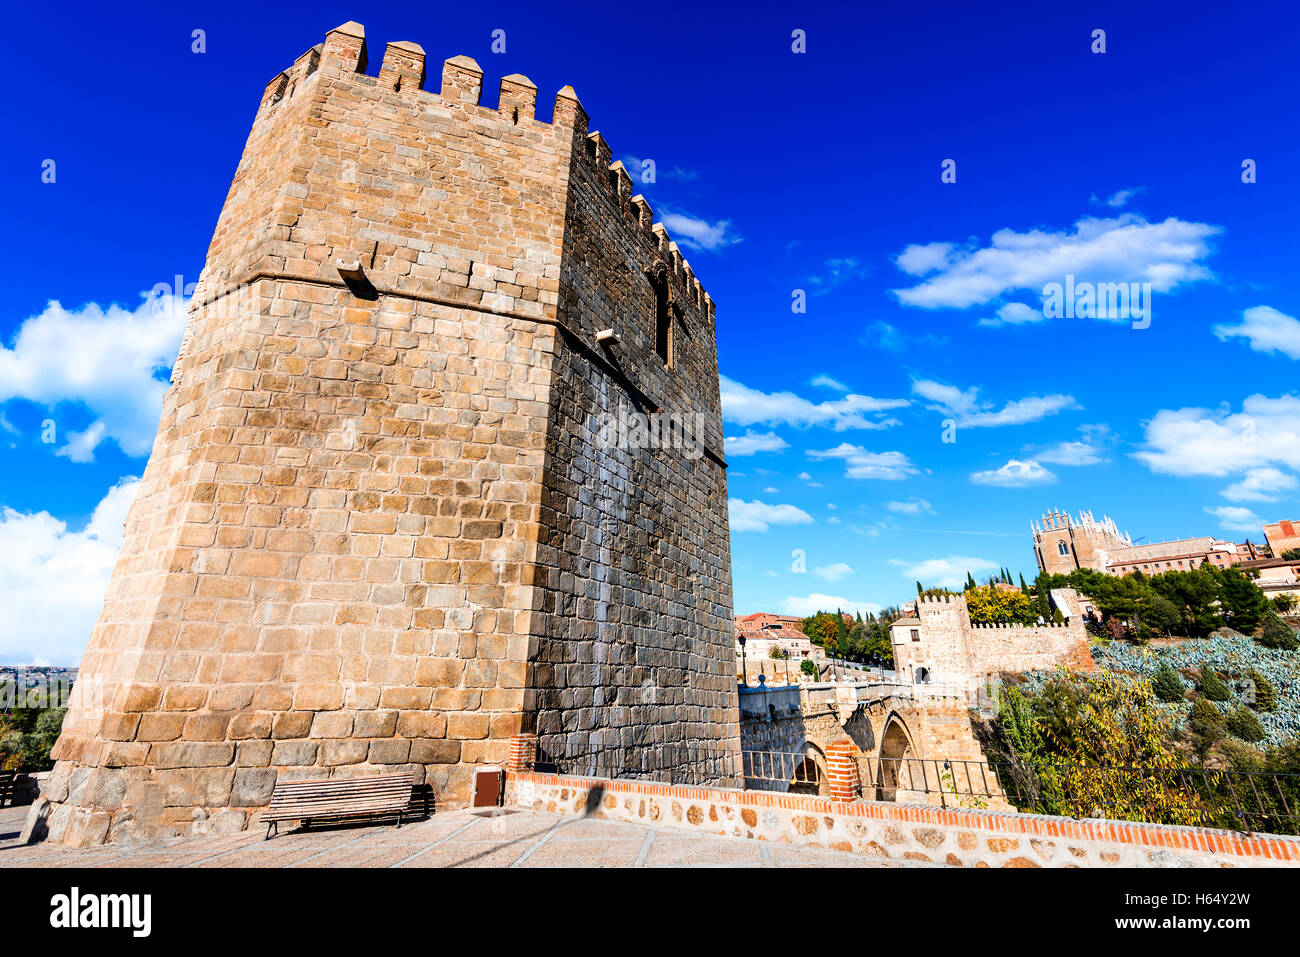 Toledo, Espagne. San Martin pont de pierre sur la rivière calme. Lieu touristique très populaire en Europe. Banque D'Images